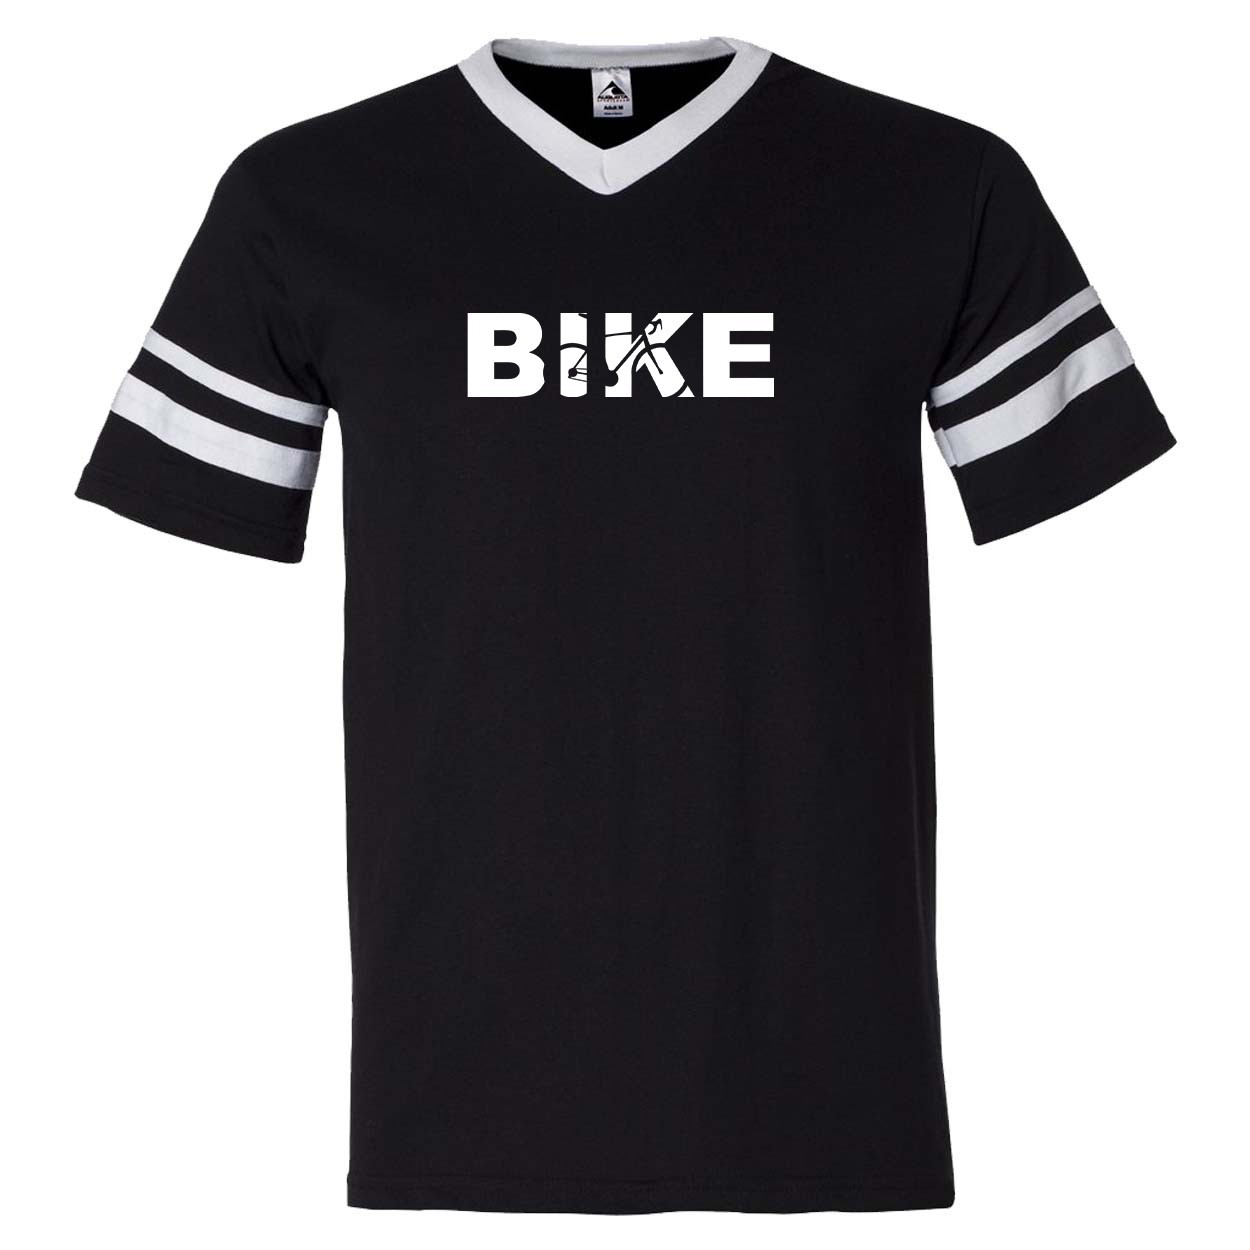 Bike Cycling Logo Classic Premium Striped Jersey T-Shirt Black/White (White Logo)